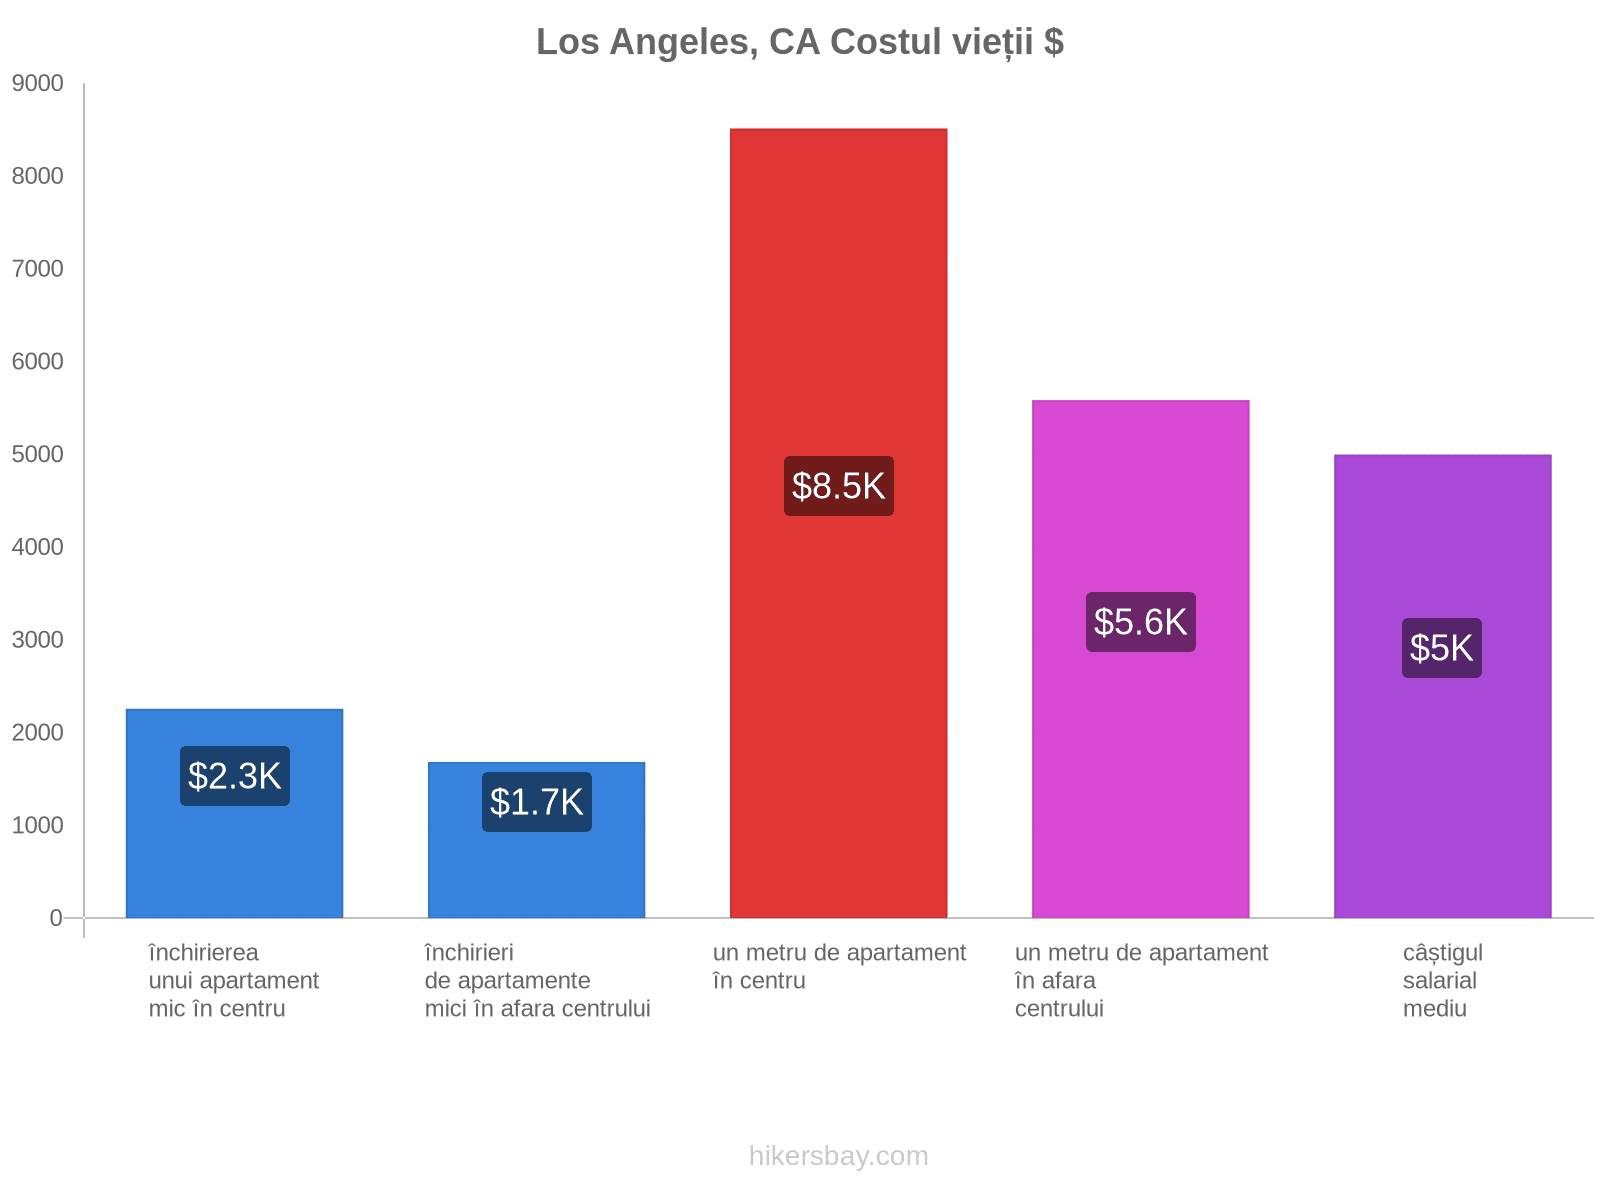 Los Angeles, CA costul vieții hikersbay.com